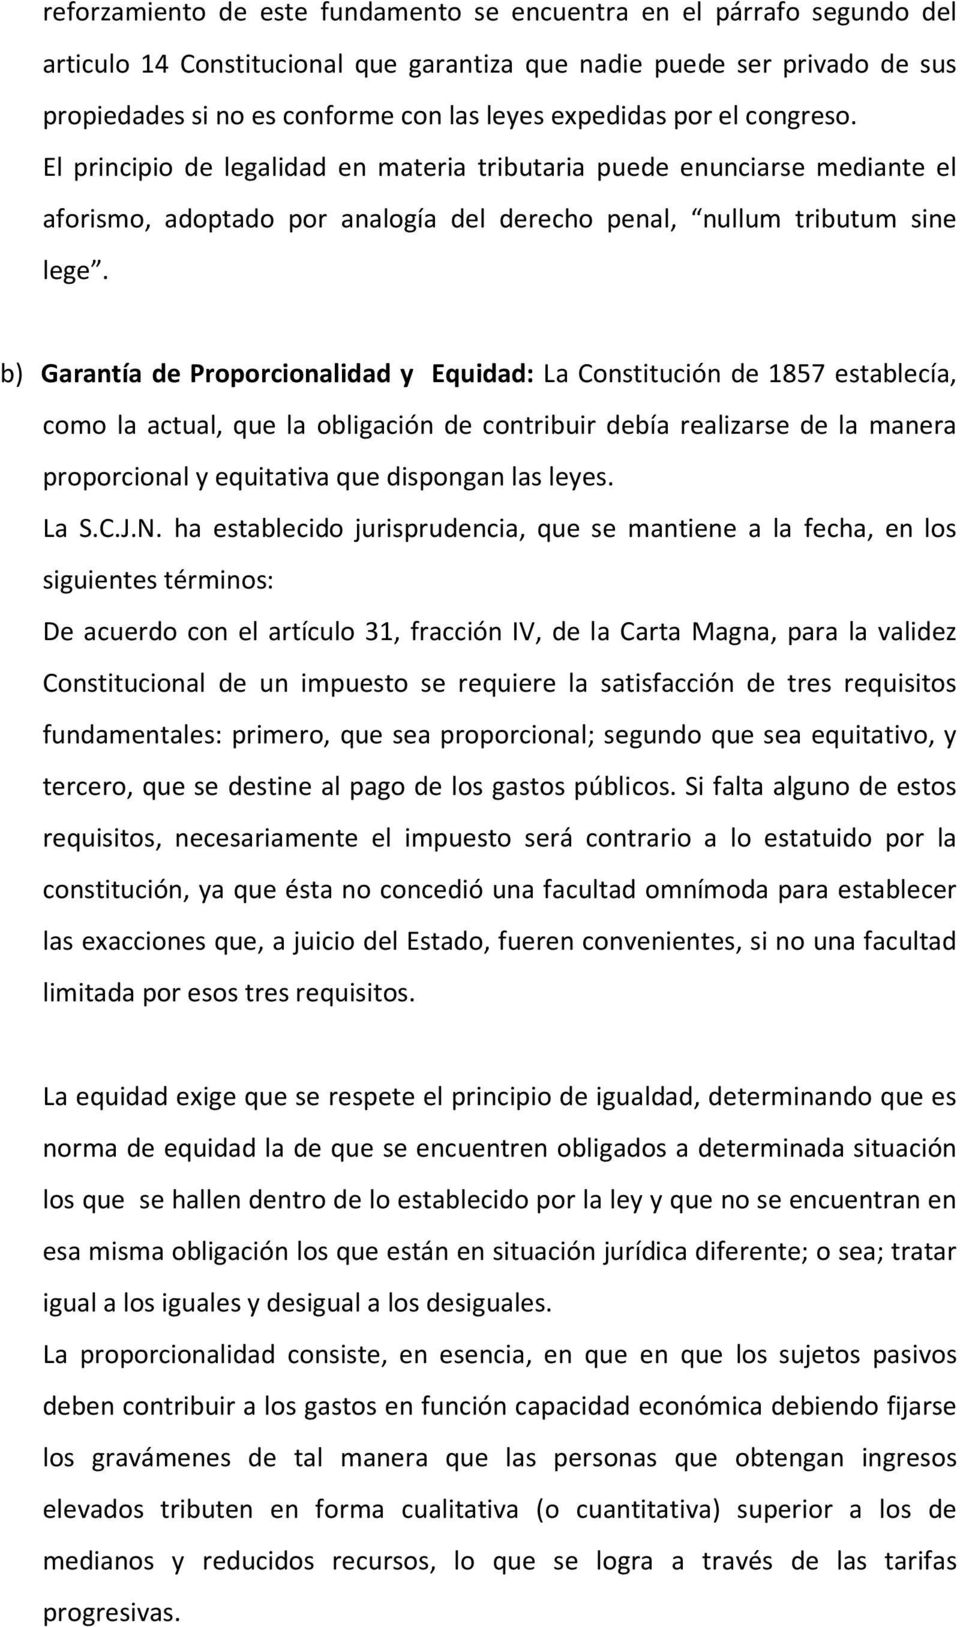 b) Garantía de Proporcionalidad y Equidad: La Constitución de 1857 establecía, como la actual, que la obligación de contribuir debía realizarse de la manera proporcional y equitativa que dispongan